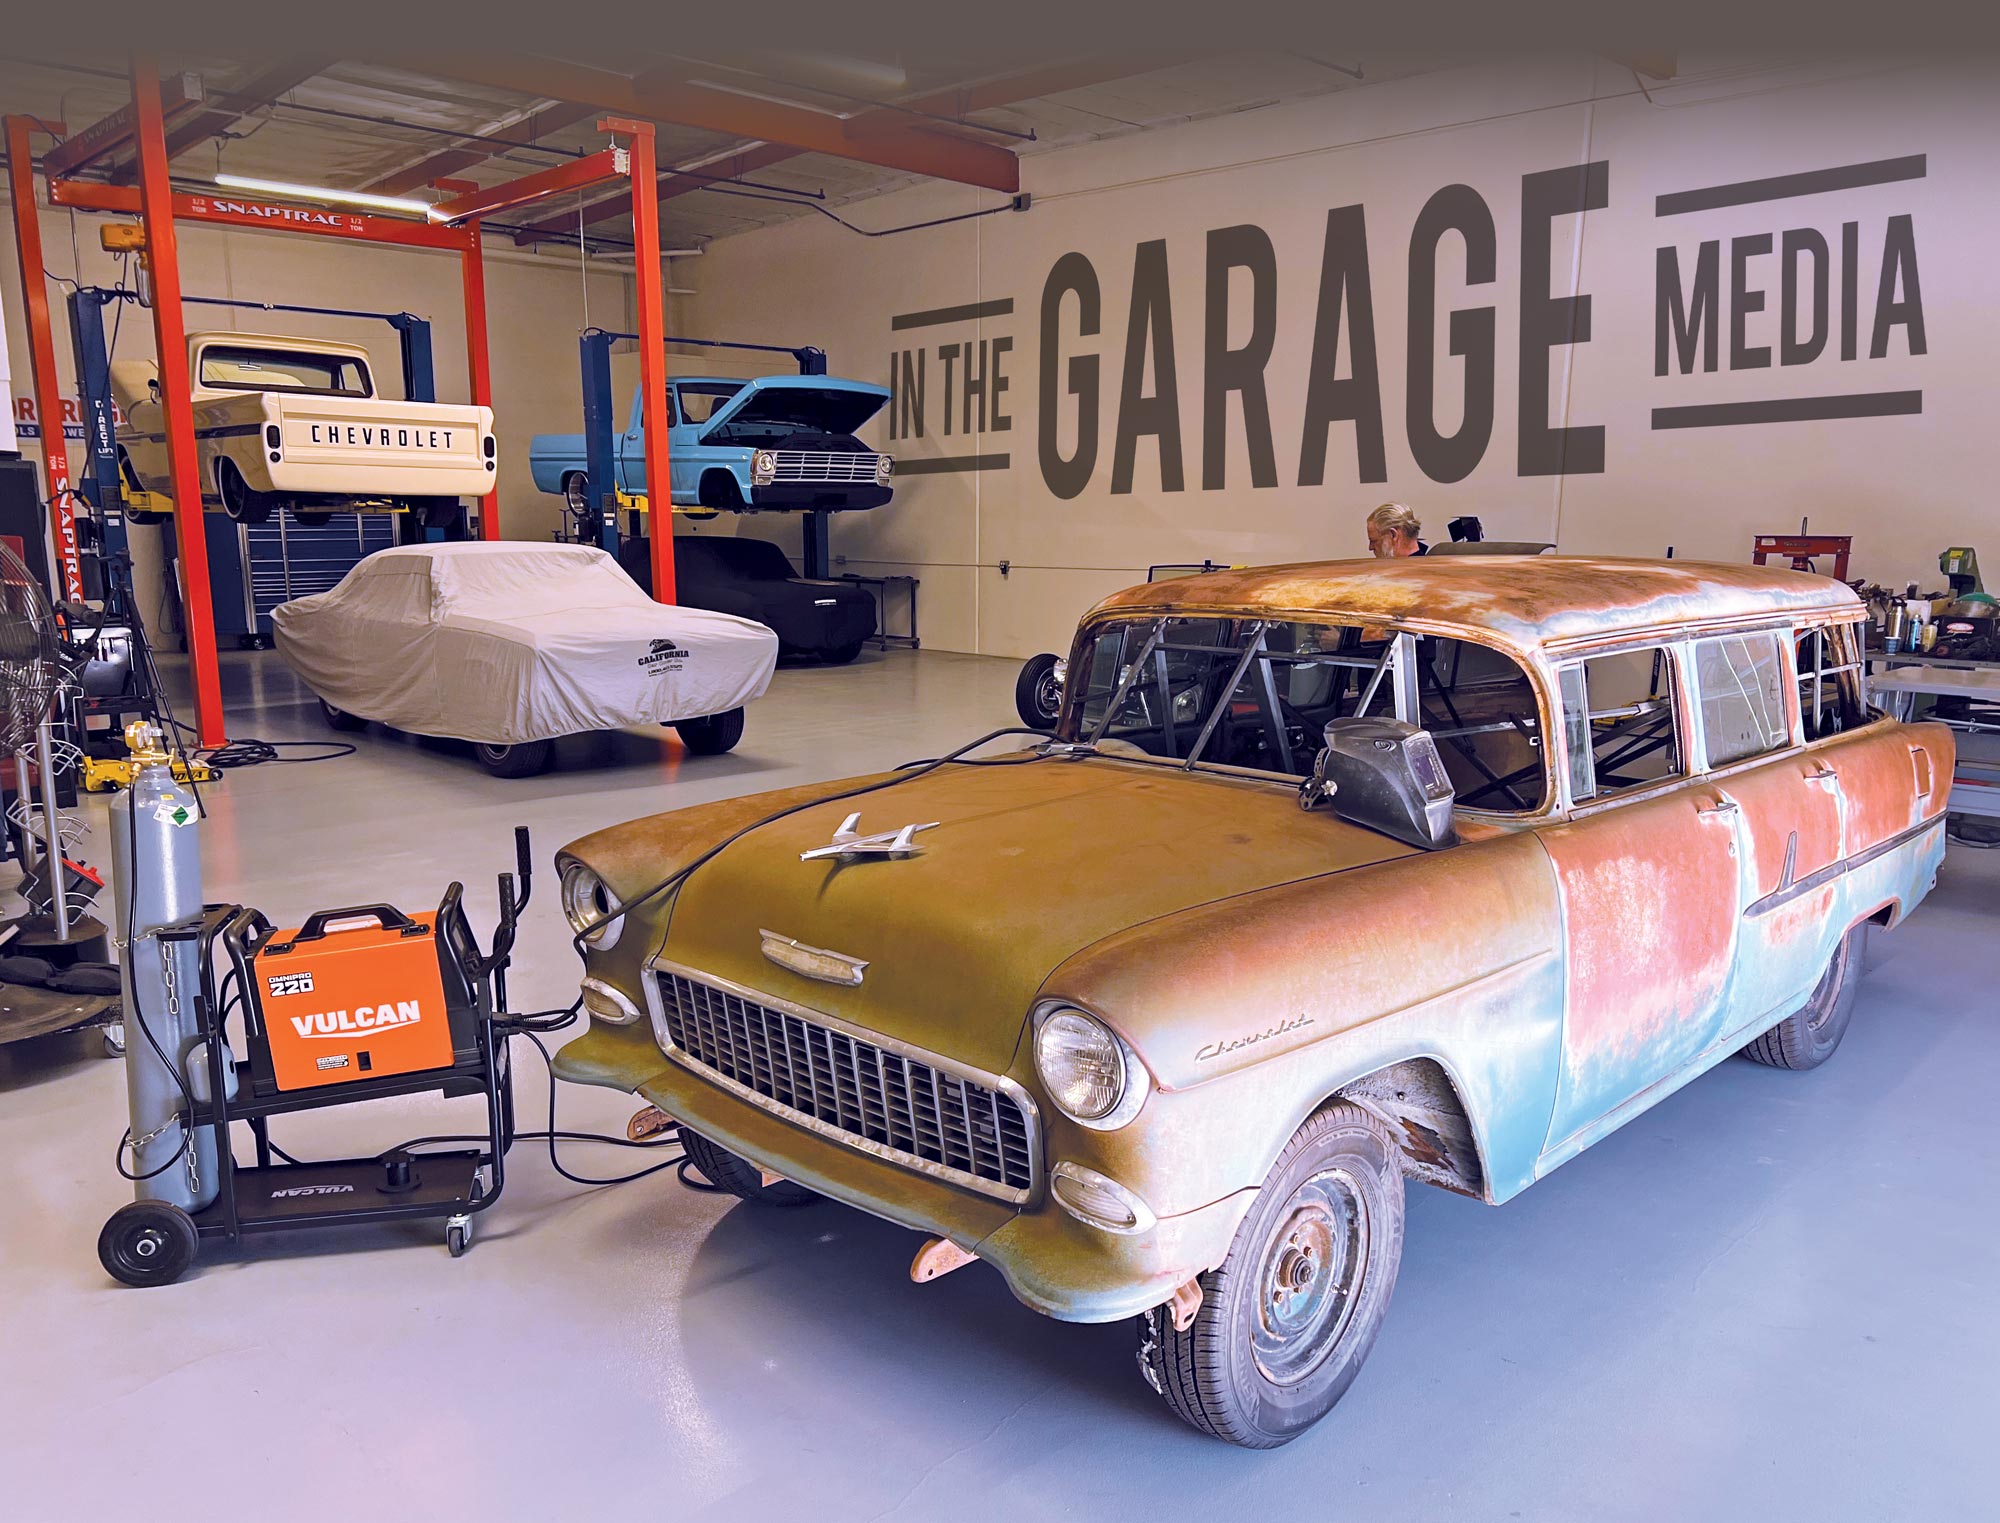 55 Chevy Wagon in garage